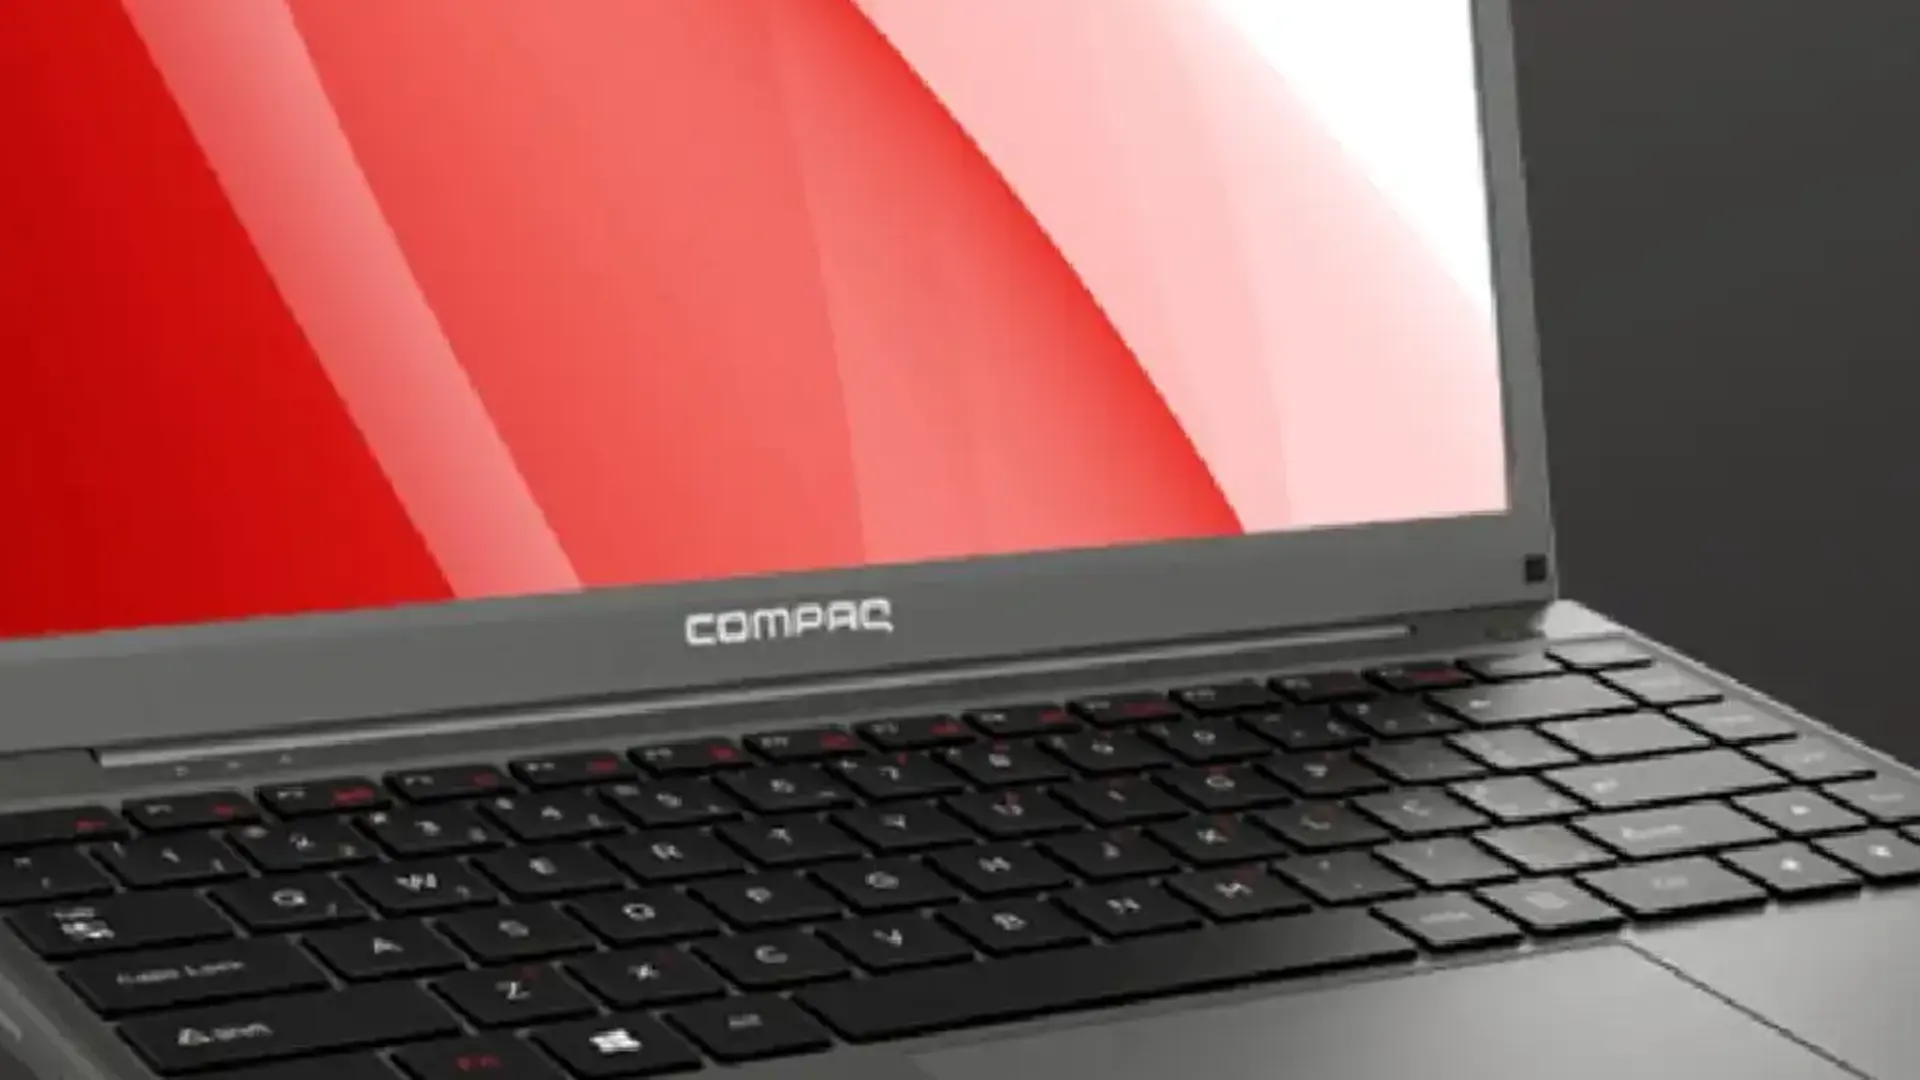 Dispositivo Compaq como uma das melhores marcas de notebook